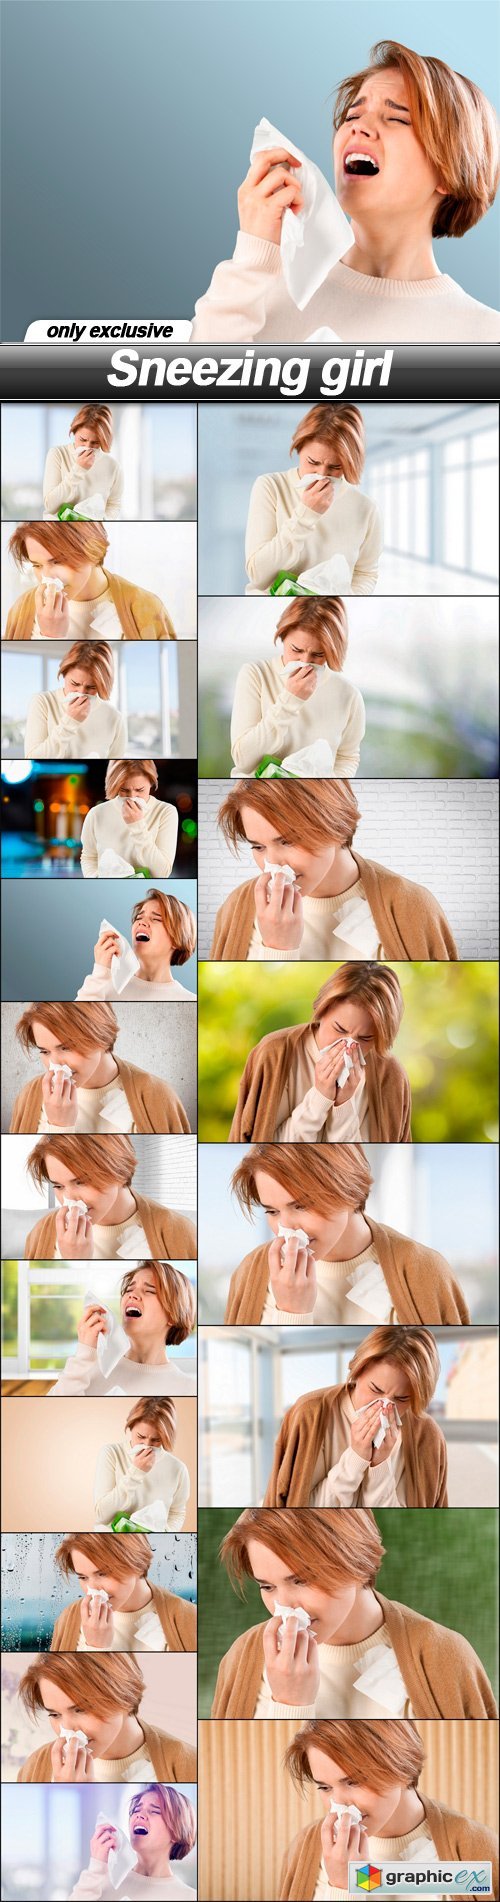 Sneezing girl - 20 UHQ JPEG